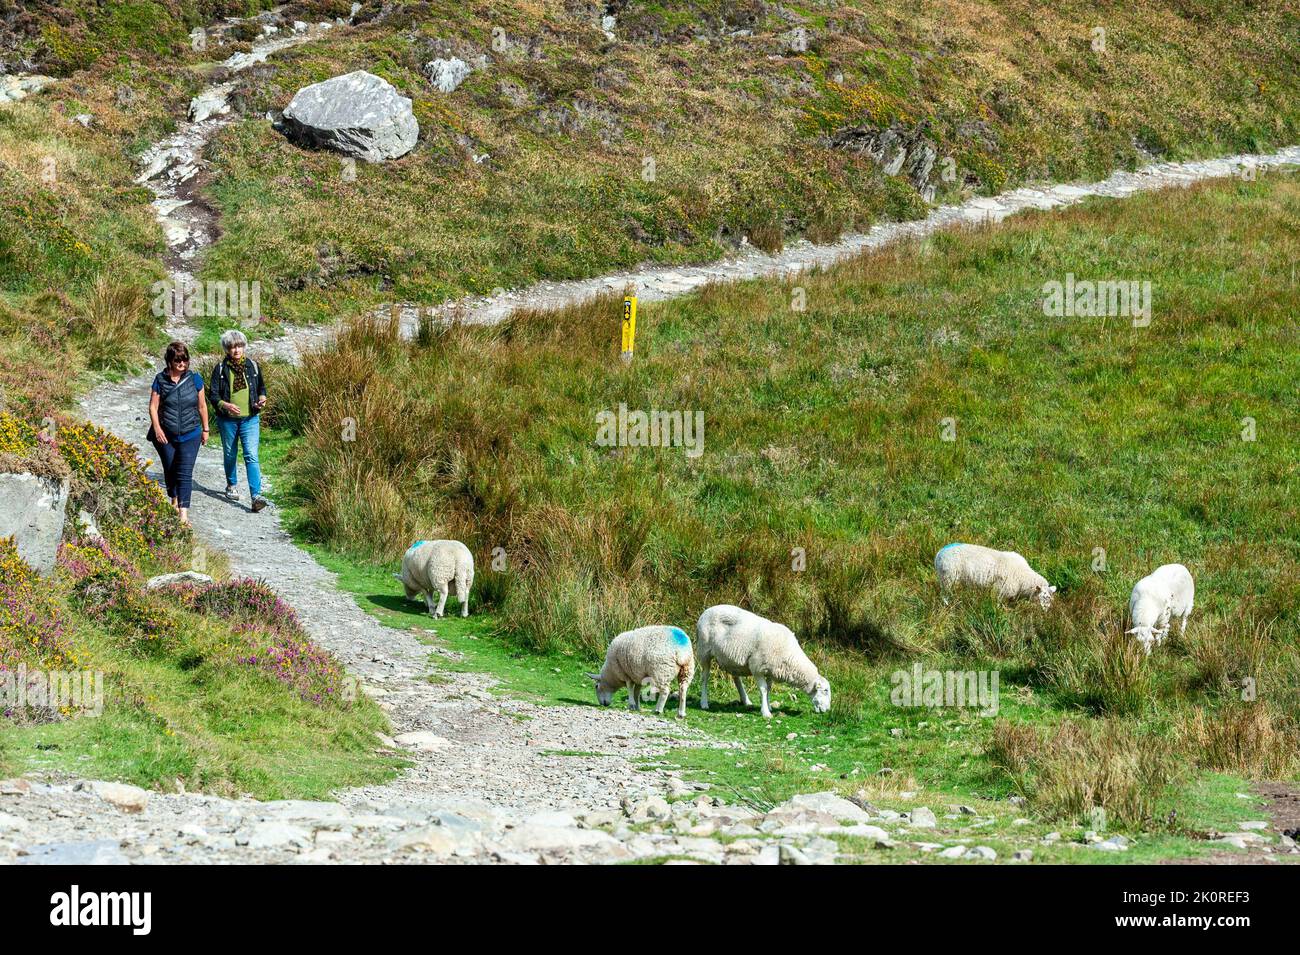 Sheep's Head, West Cork, Irlanda. 13th Set, 2022. La pittoresca testa di pecora era affollata di turisti oggi in quella che era una giornata soleggiata ma ventilata. Met Éireann ha previsto giorni secchi e caldi per il resto della settimana. Credit: AG News/Alamy Live News Foto Stock